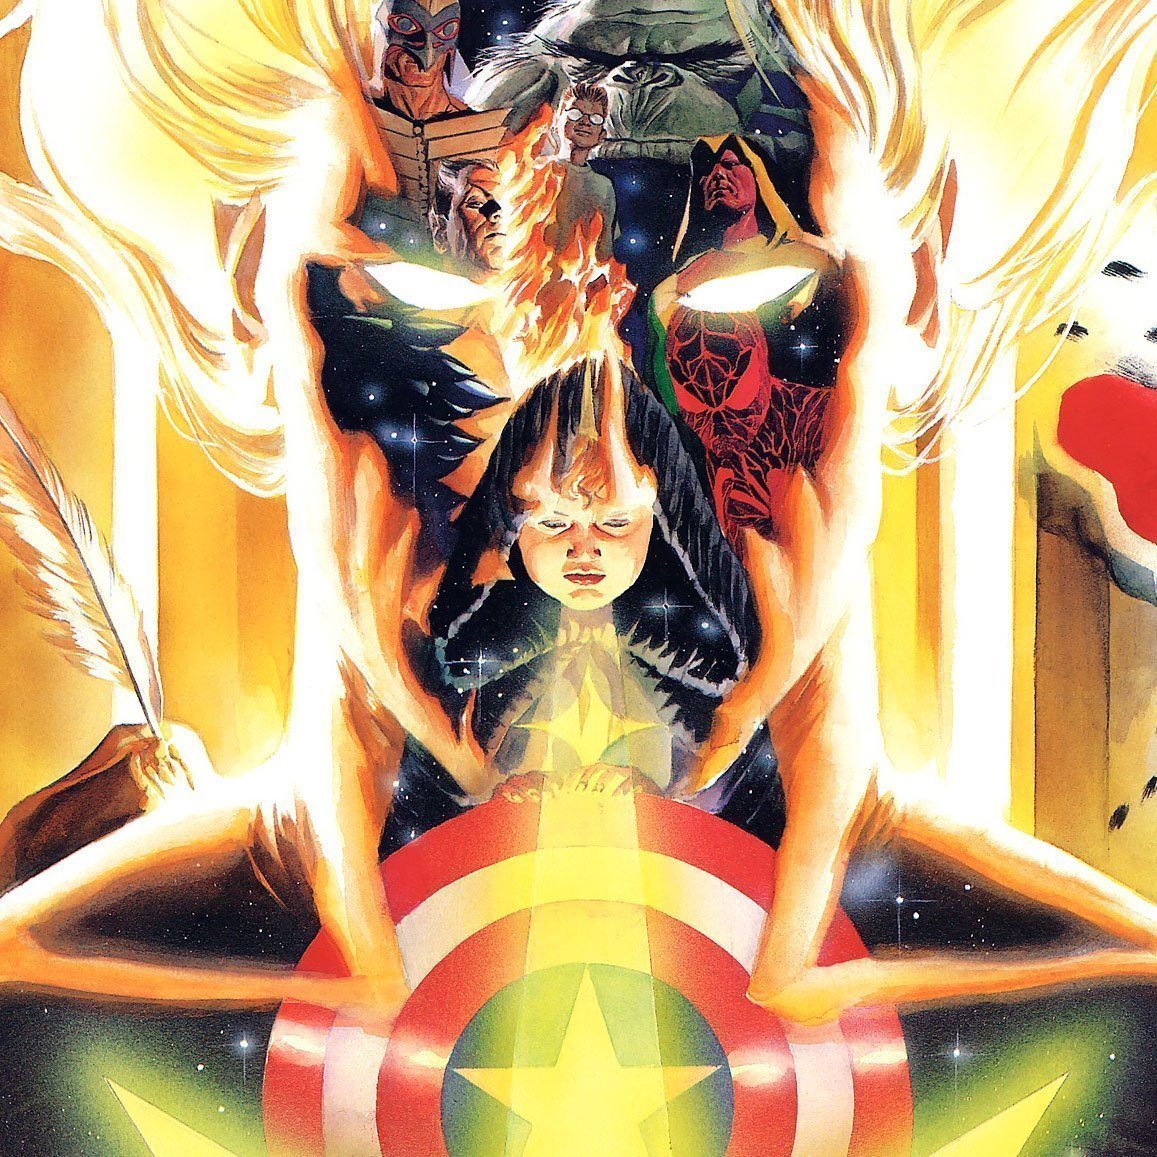 12 comics cultes Marvel sont consultables gratuitement en ligne